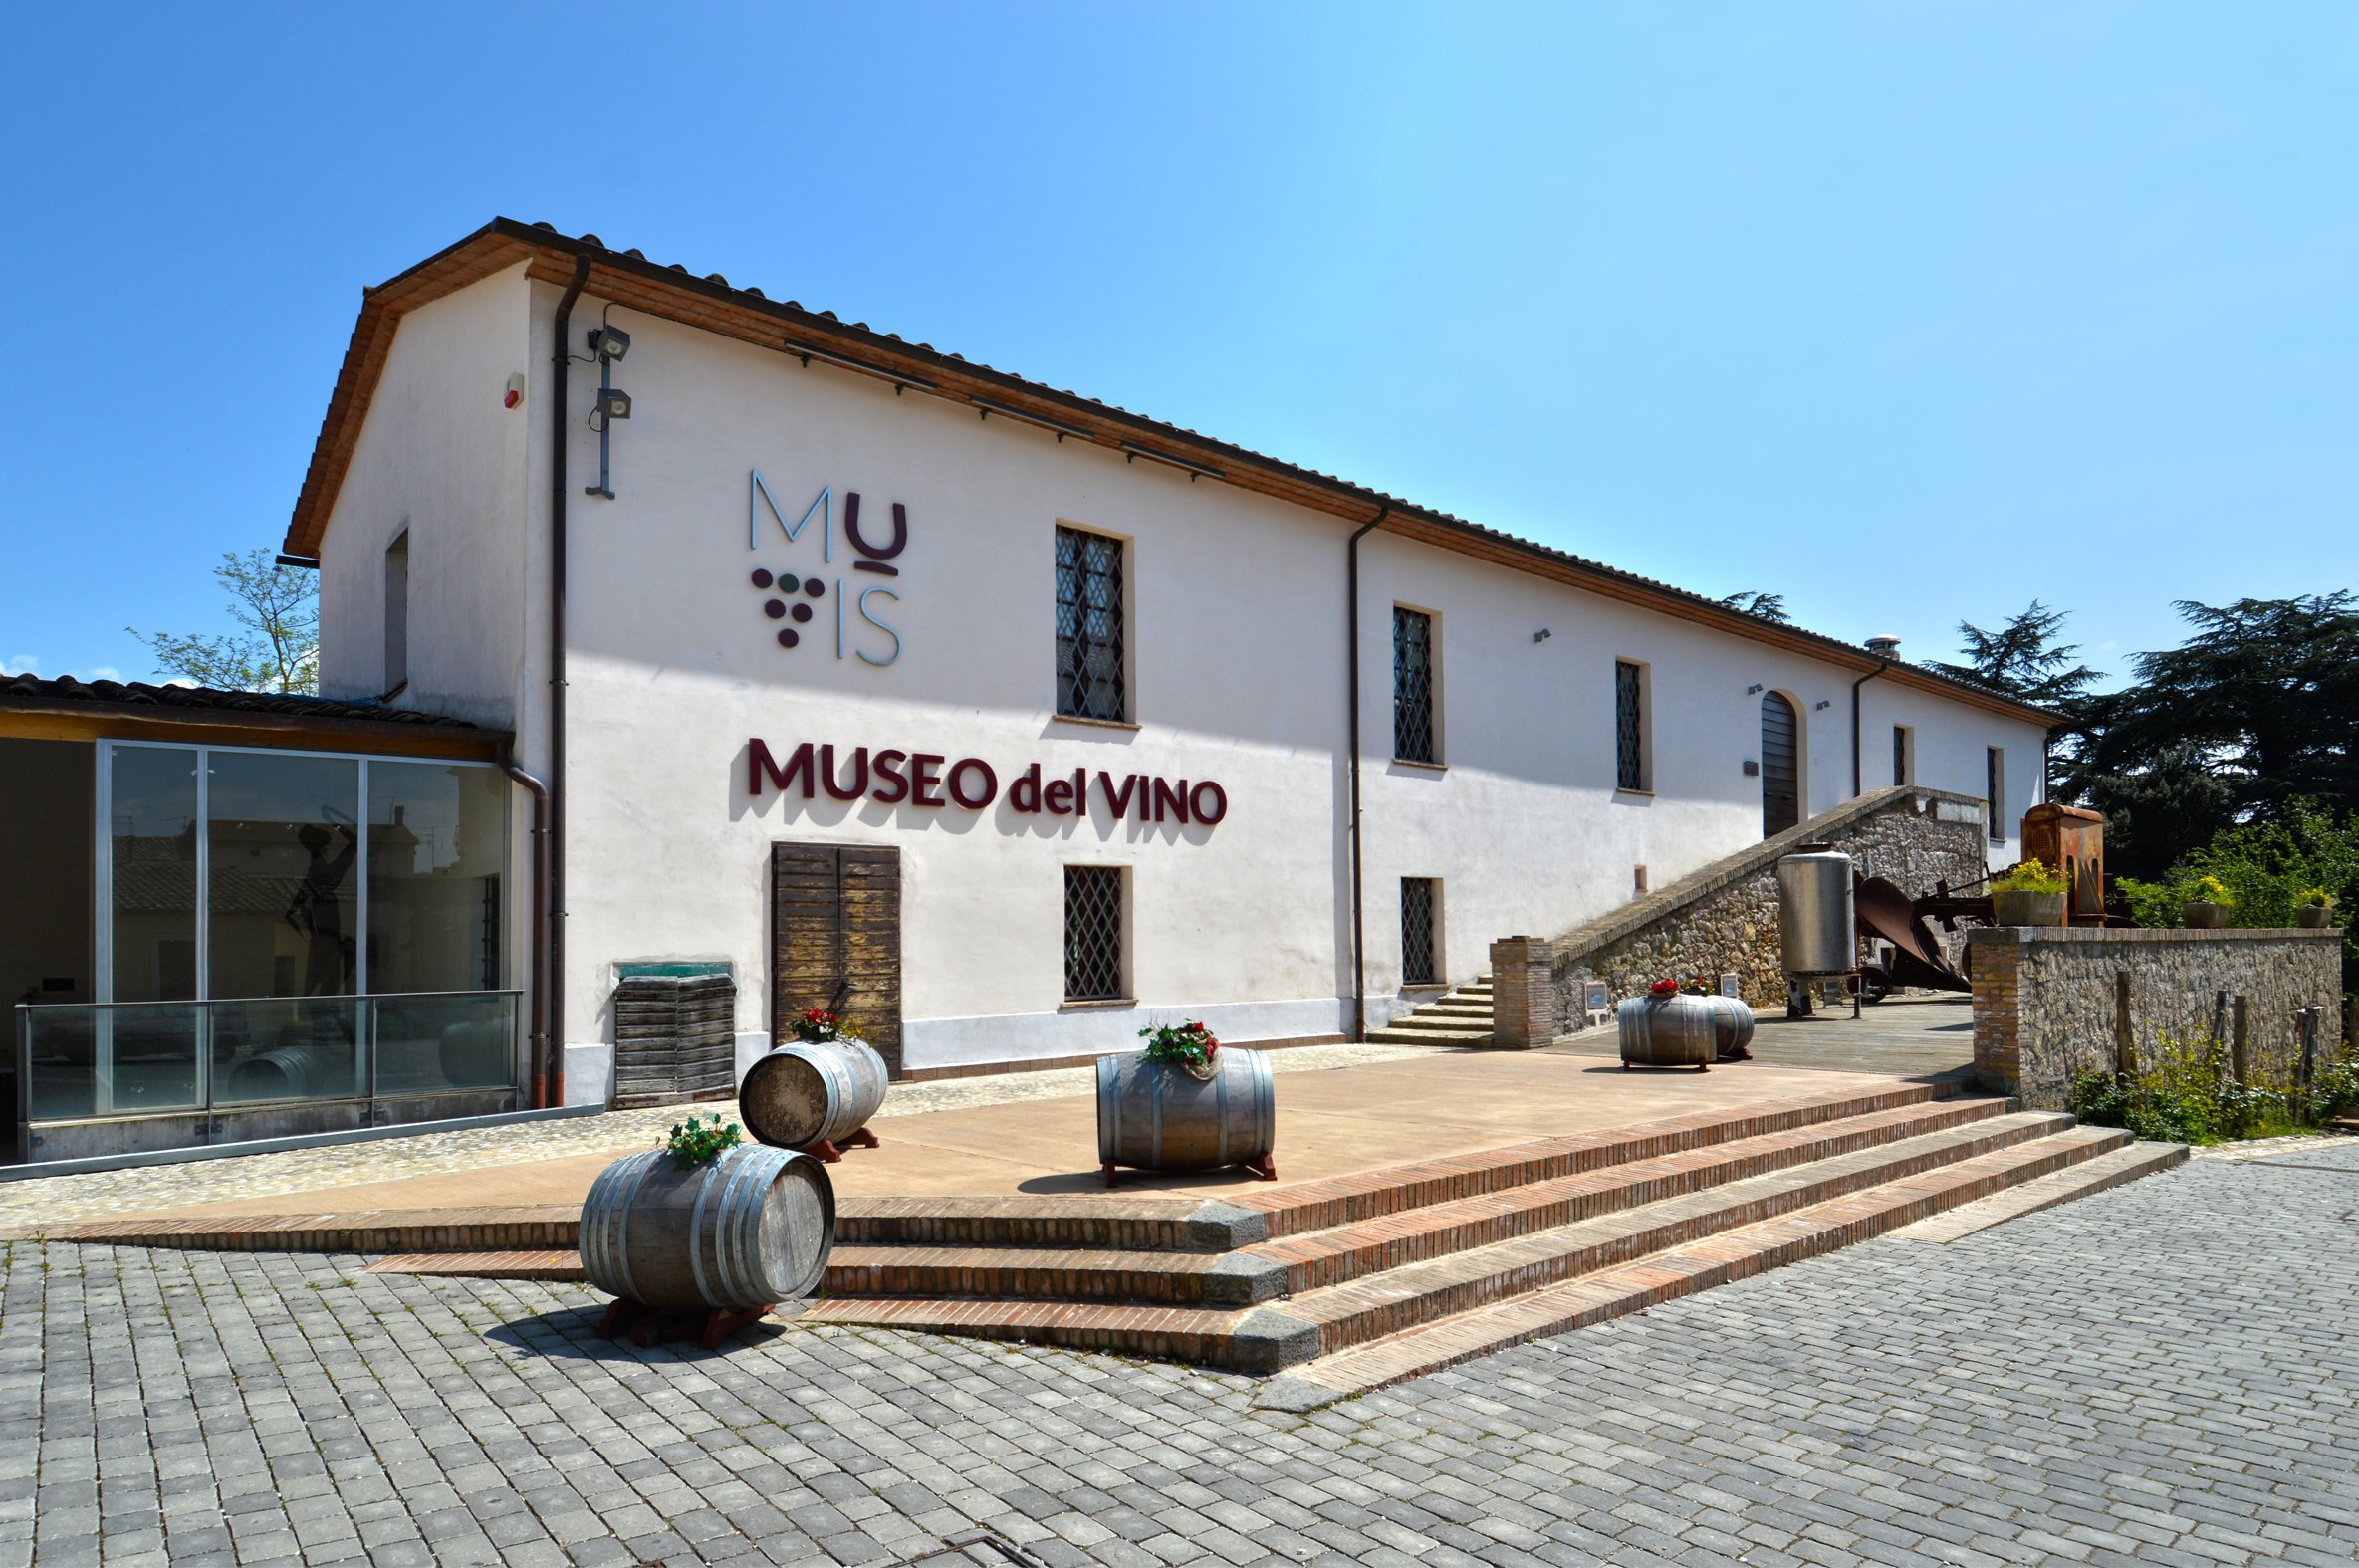 MUVIS Museo del vino Castiglione in Teverina